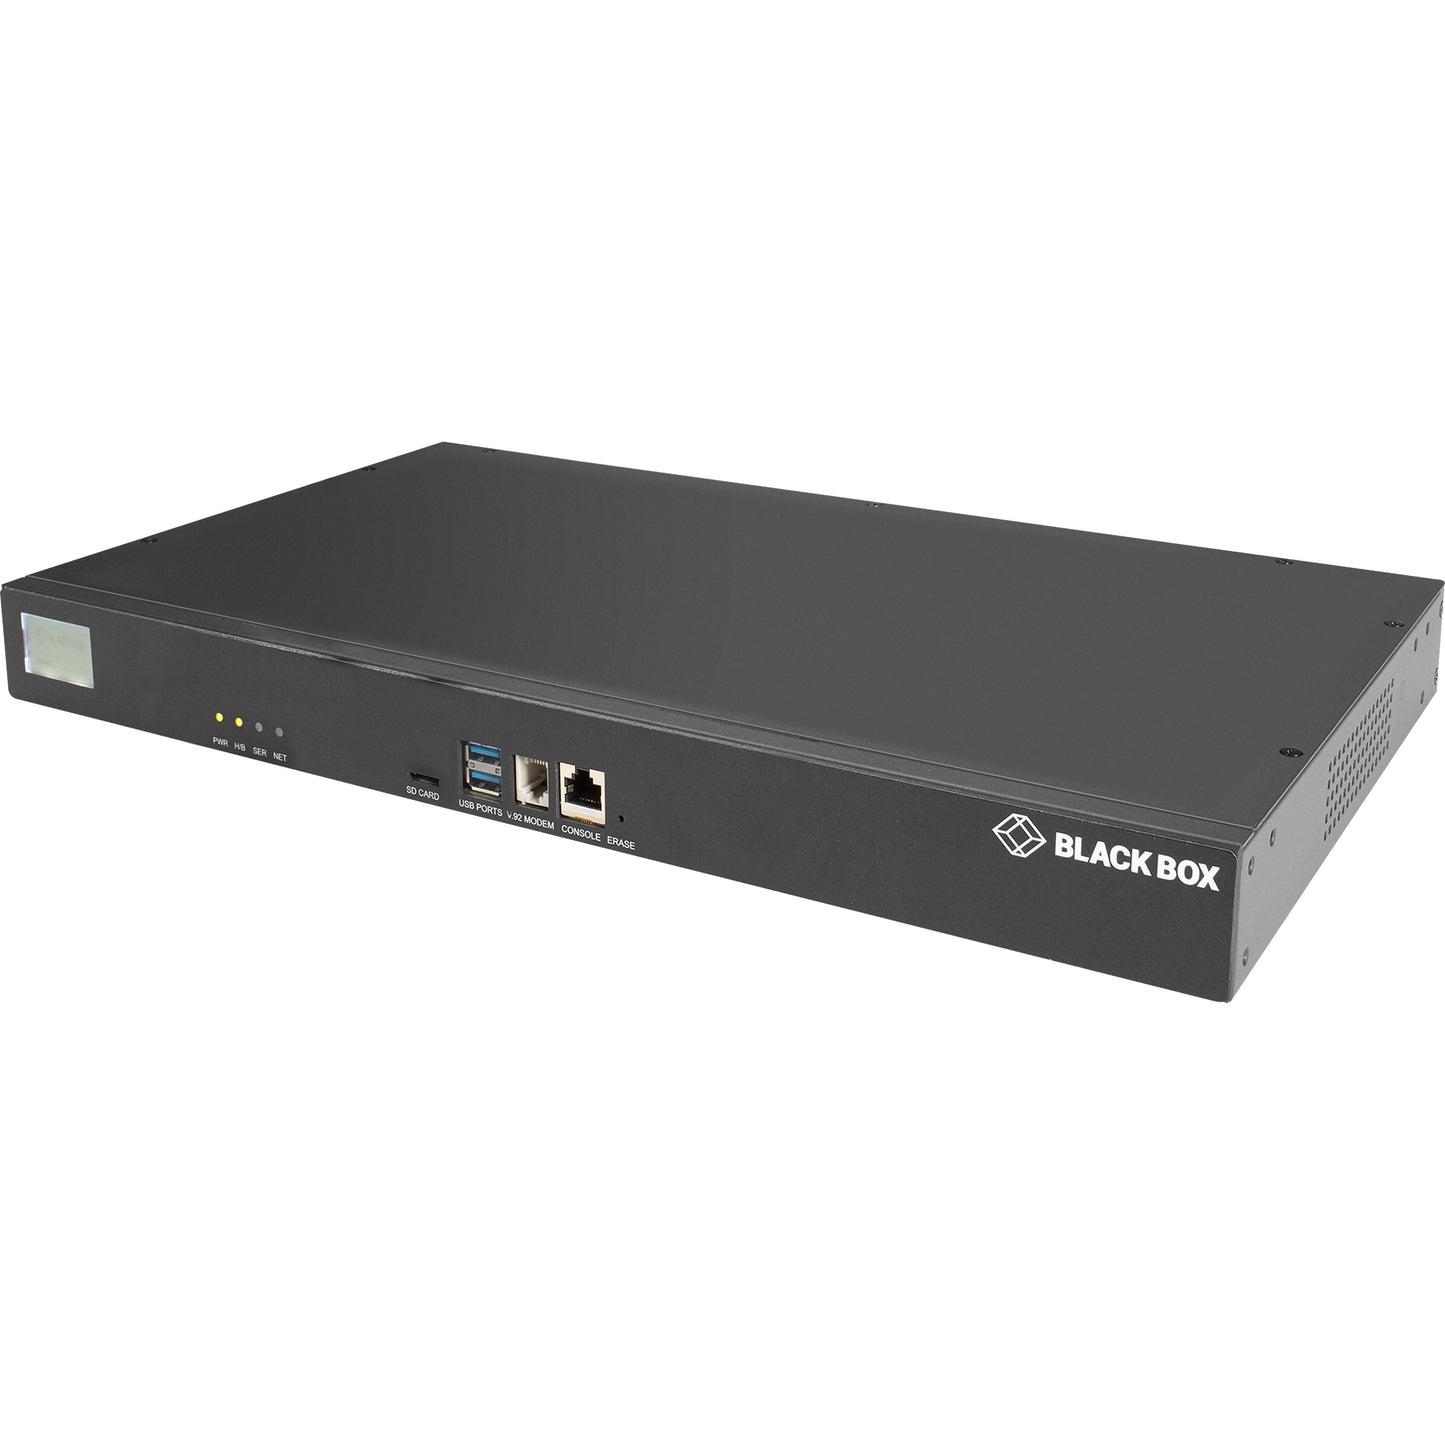 Black Box LES1700 Series Console Server - POTS Modem Dual 10/100/1000